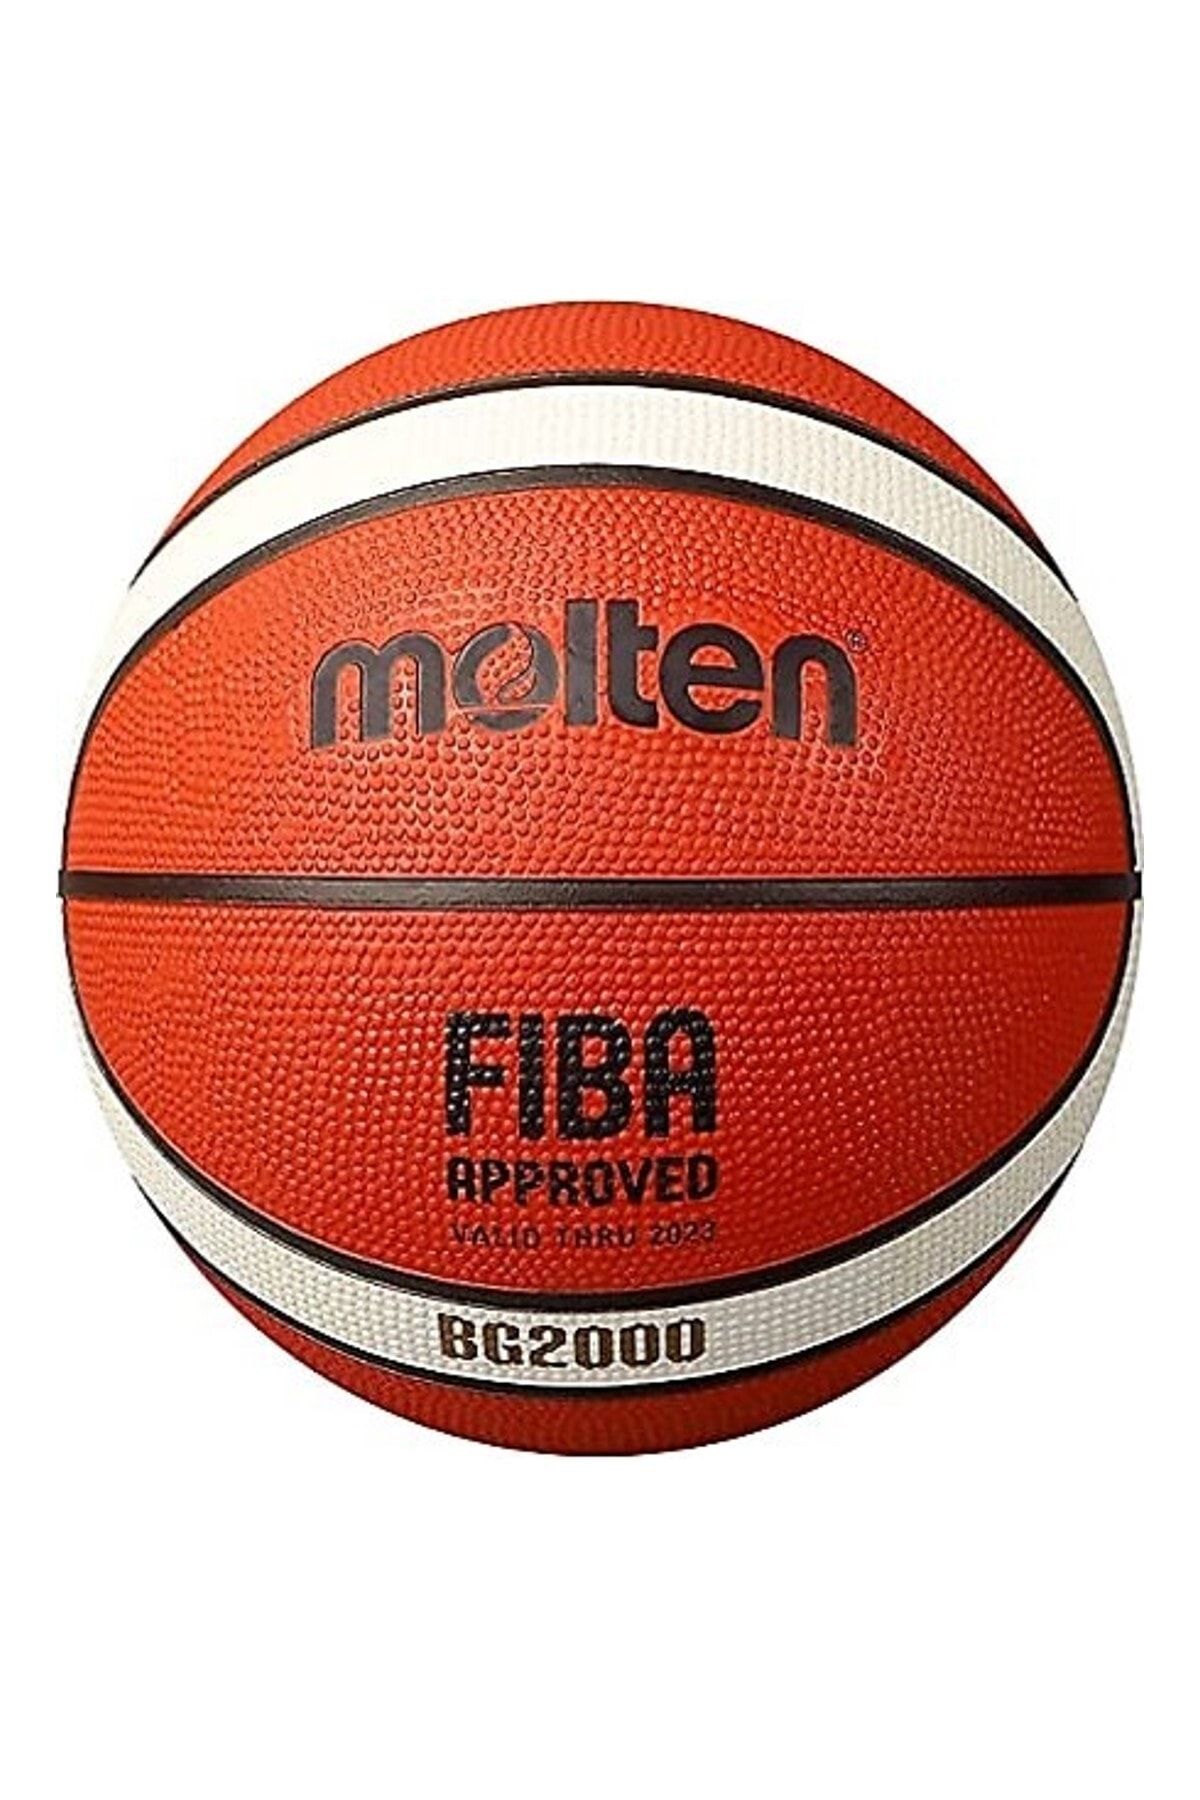 Molten Bg2000 Basketbol Topu 7 No